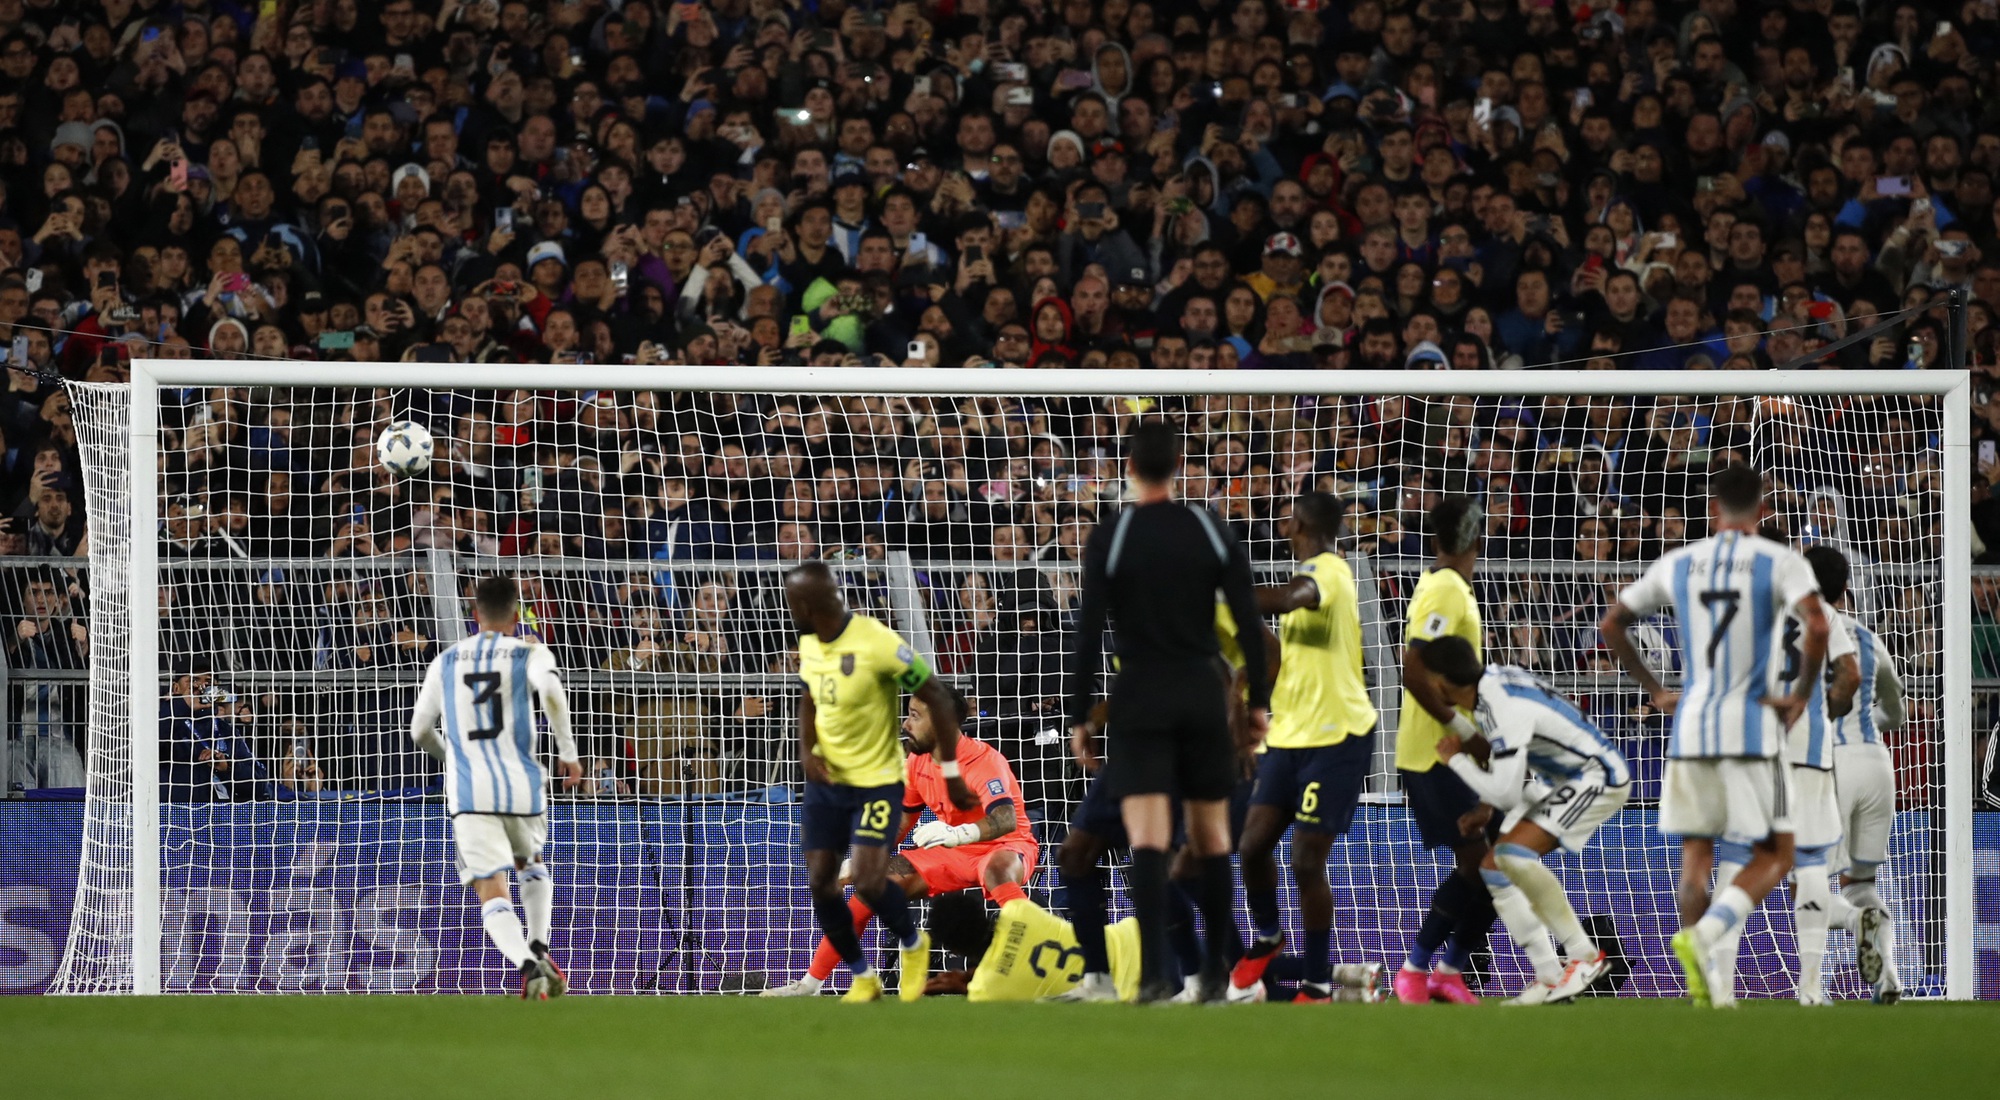 Messi ghi siêu phẩm đá phạt giúp đội tuyển Argentina đánh bại đội tuyển Ecuador - Ảnh 1.